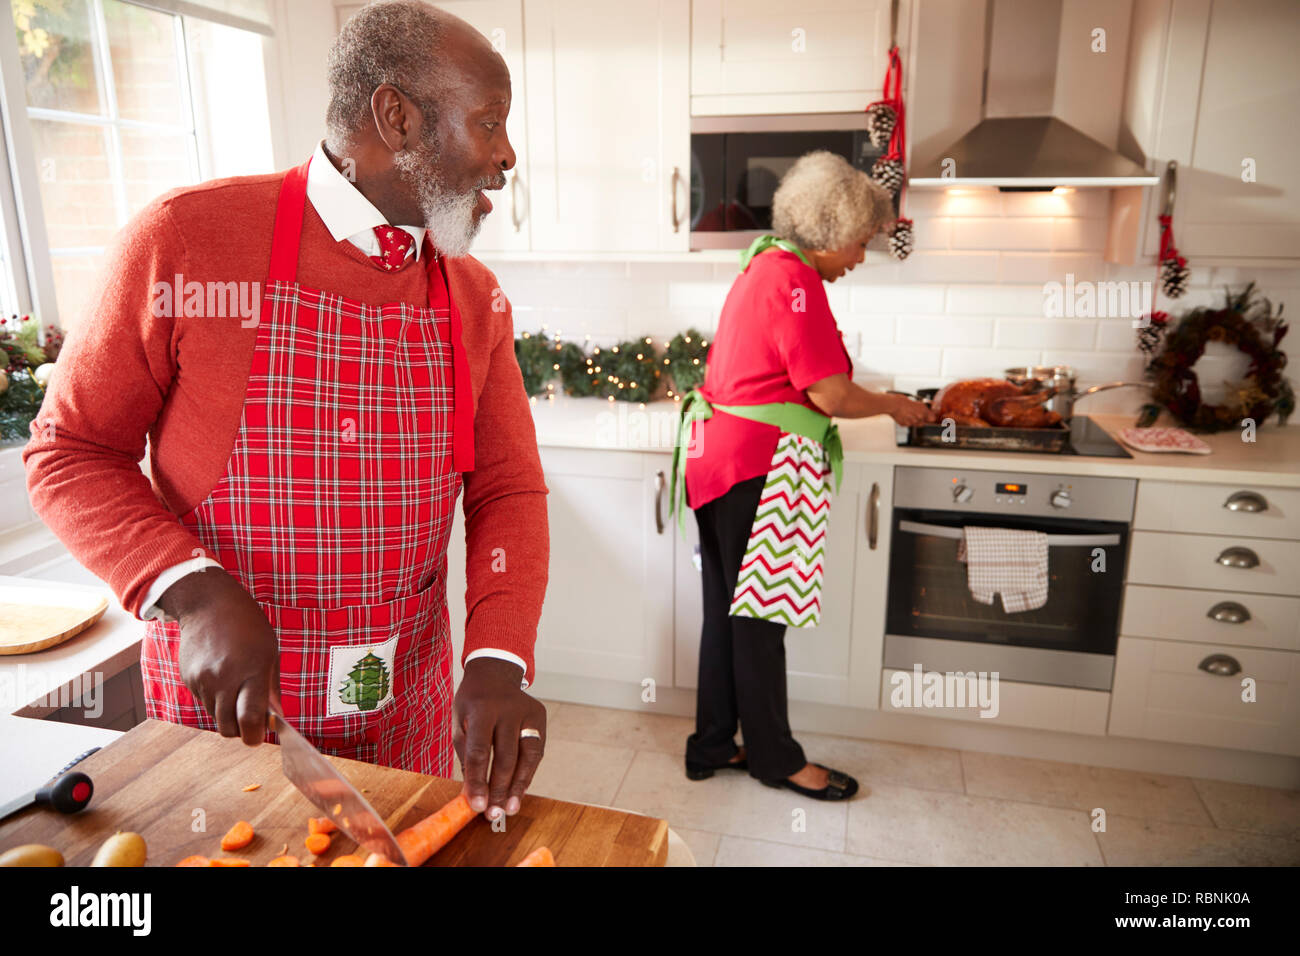 Nero matura giovane preparare la cena di Natale, uomo tritare verdure in primo piano, passando al suo partner che sta preparando la Turchia Foto Stock